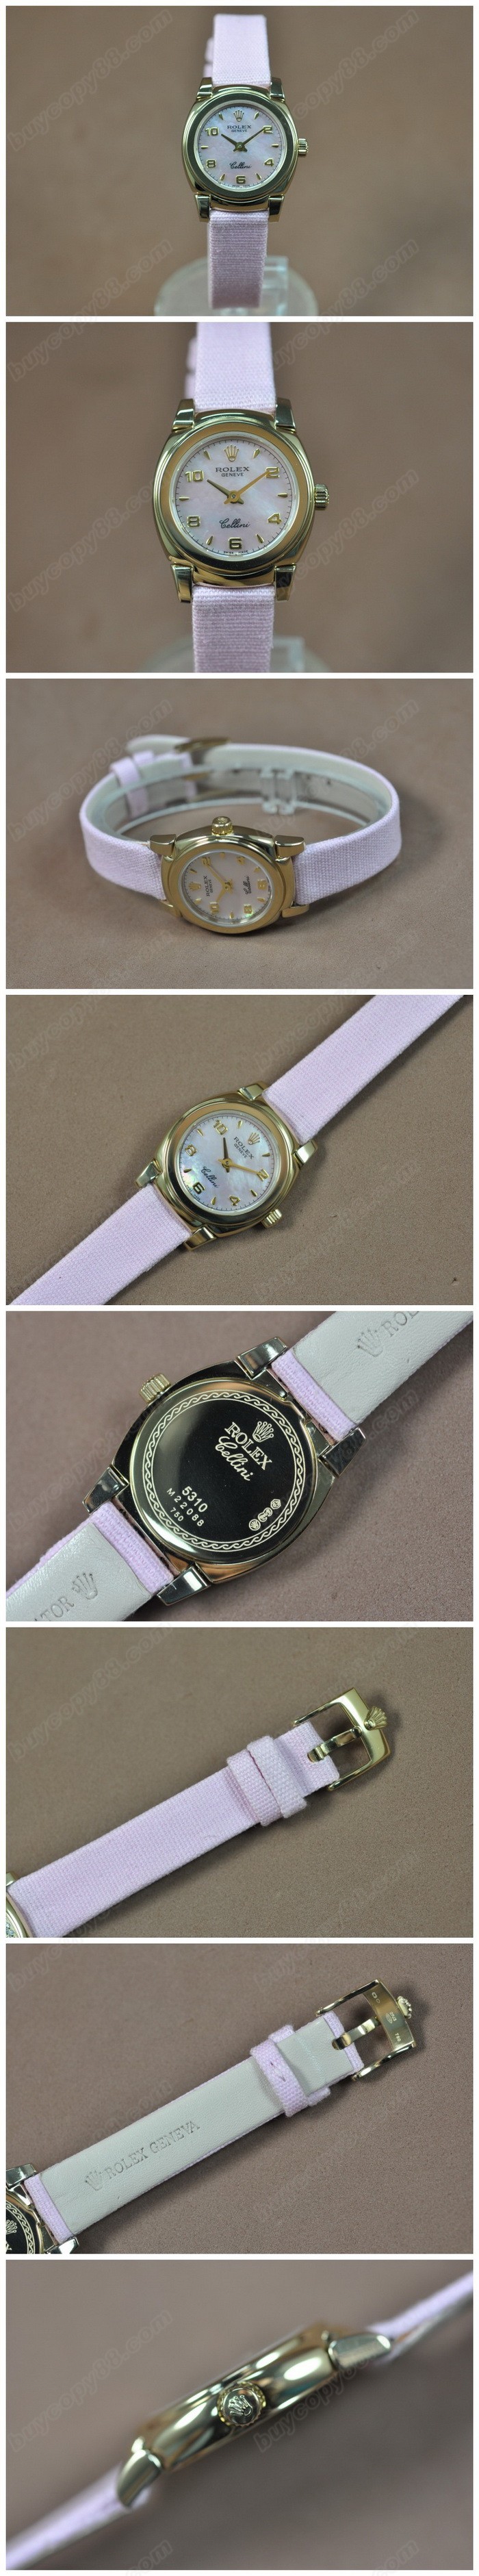  勞力士 Watches Cellini 26mm YG/LE Pearl ピンク 文字盤 Ronda 762 石英機芯 搭 載   0